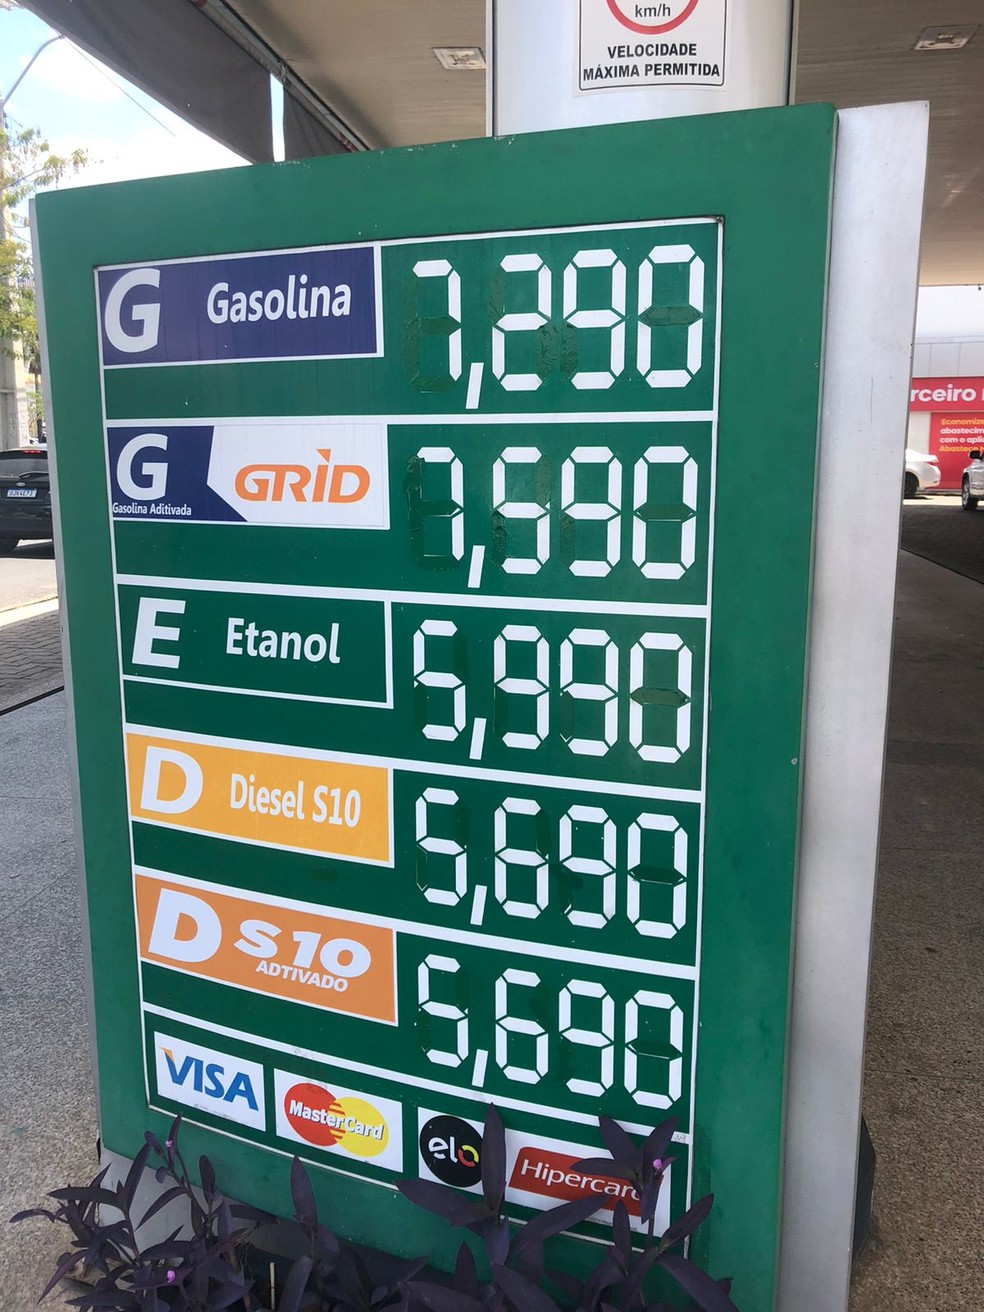 Procon flagra reajuste irregular no preço da gasolina em Teresina; valor chega a R$ 7,29 o litro — Foto: Layza Mourão/g1